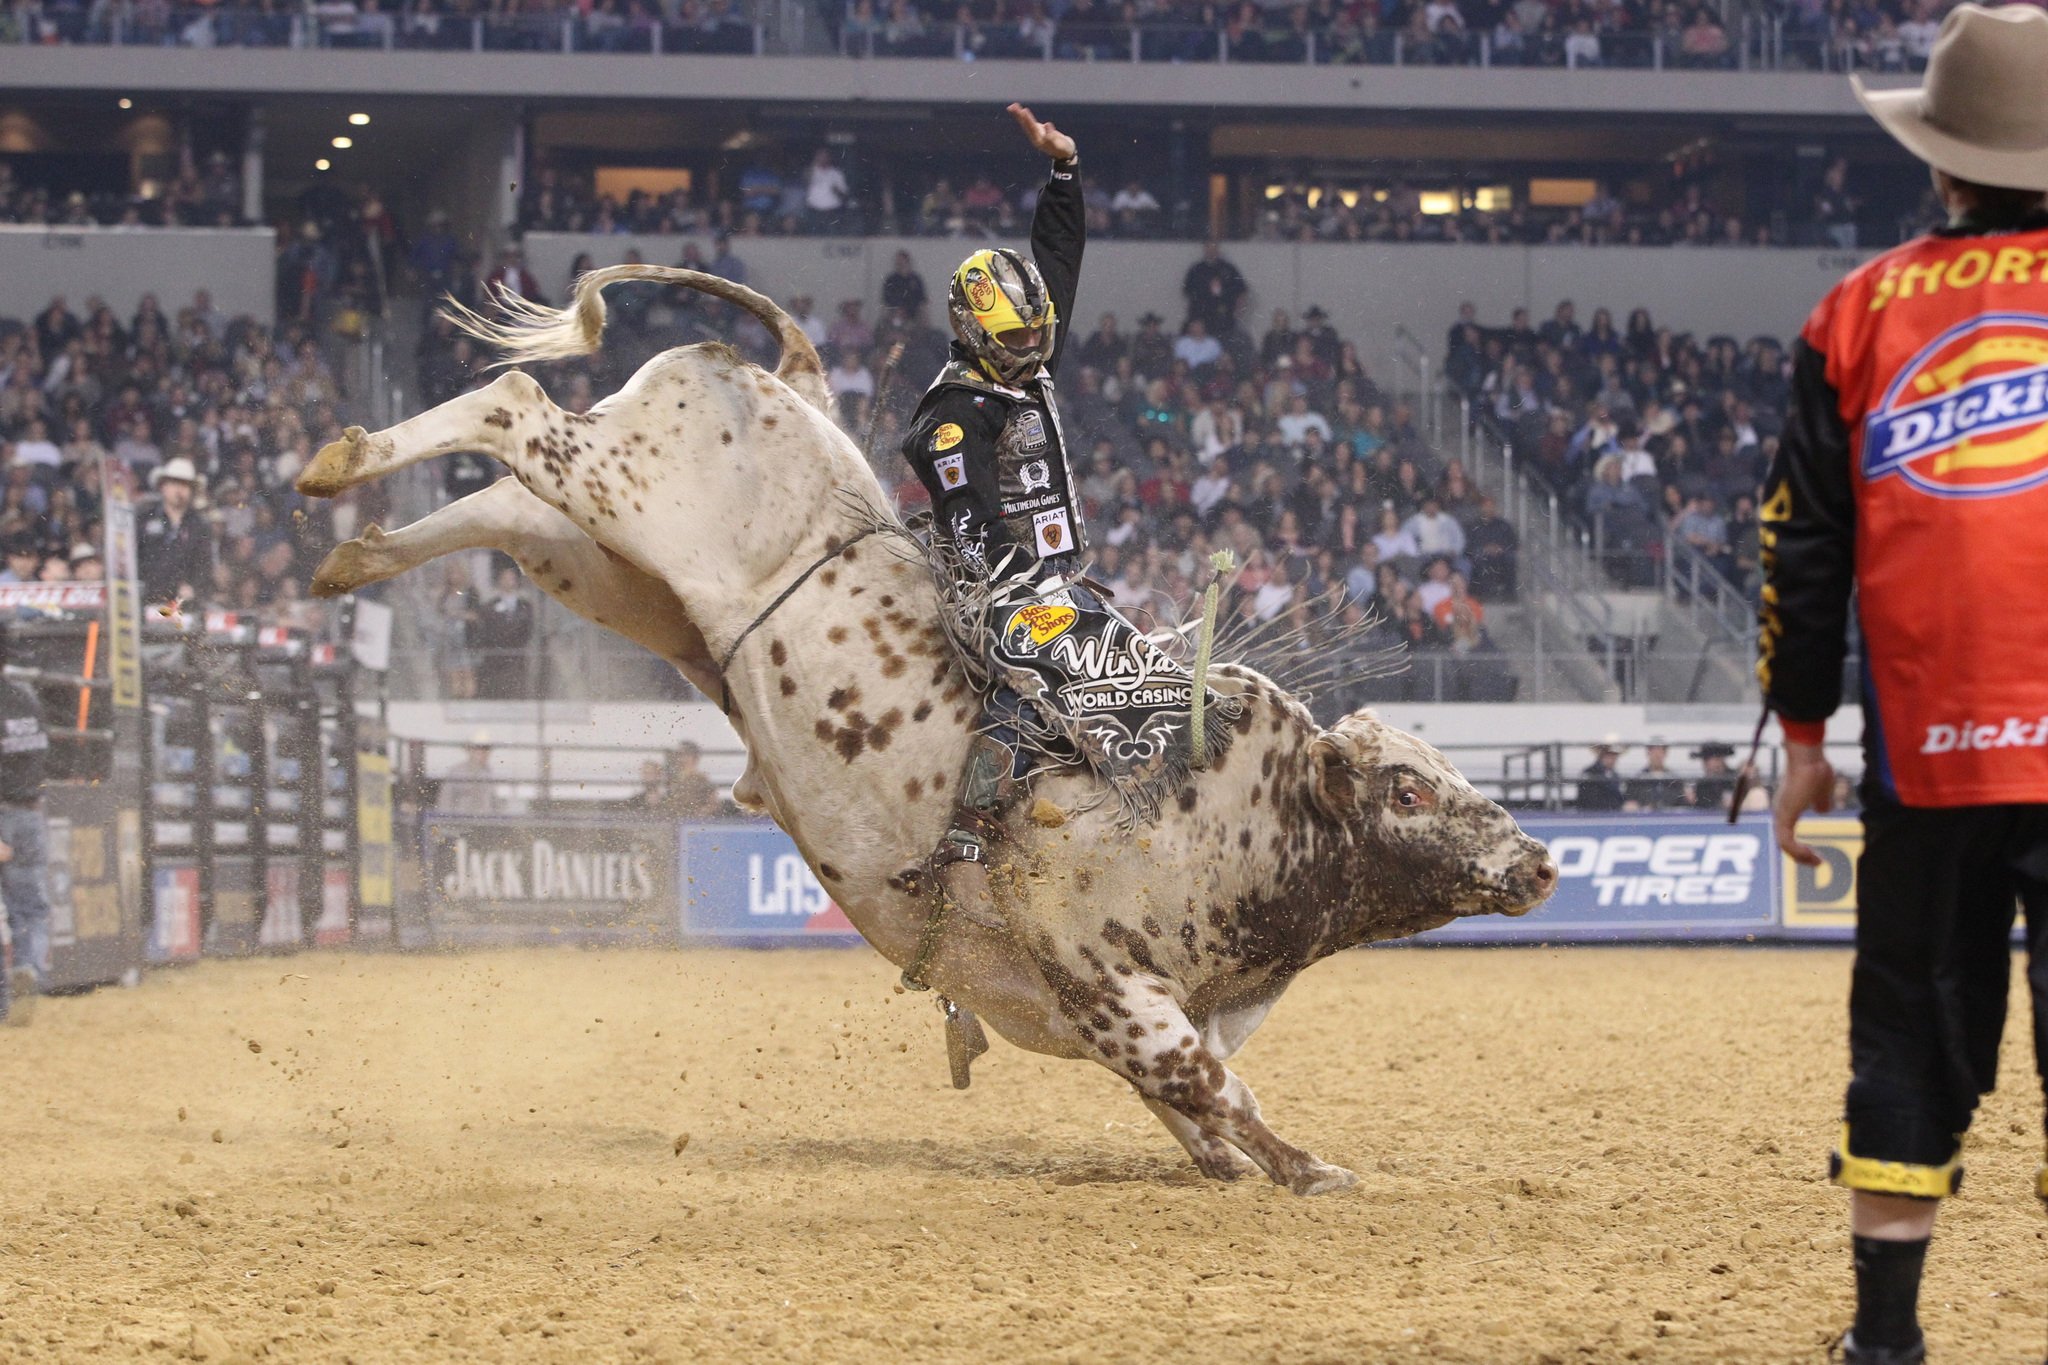 bull, Riding, Bullrider, Rodeo, Western